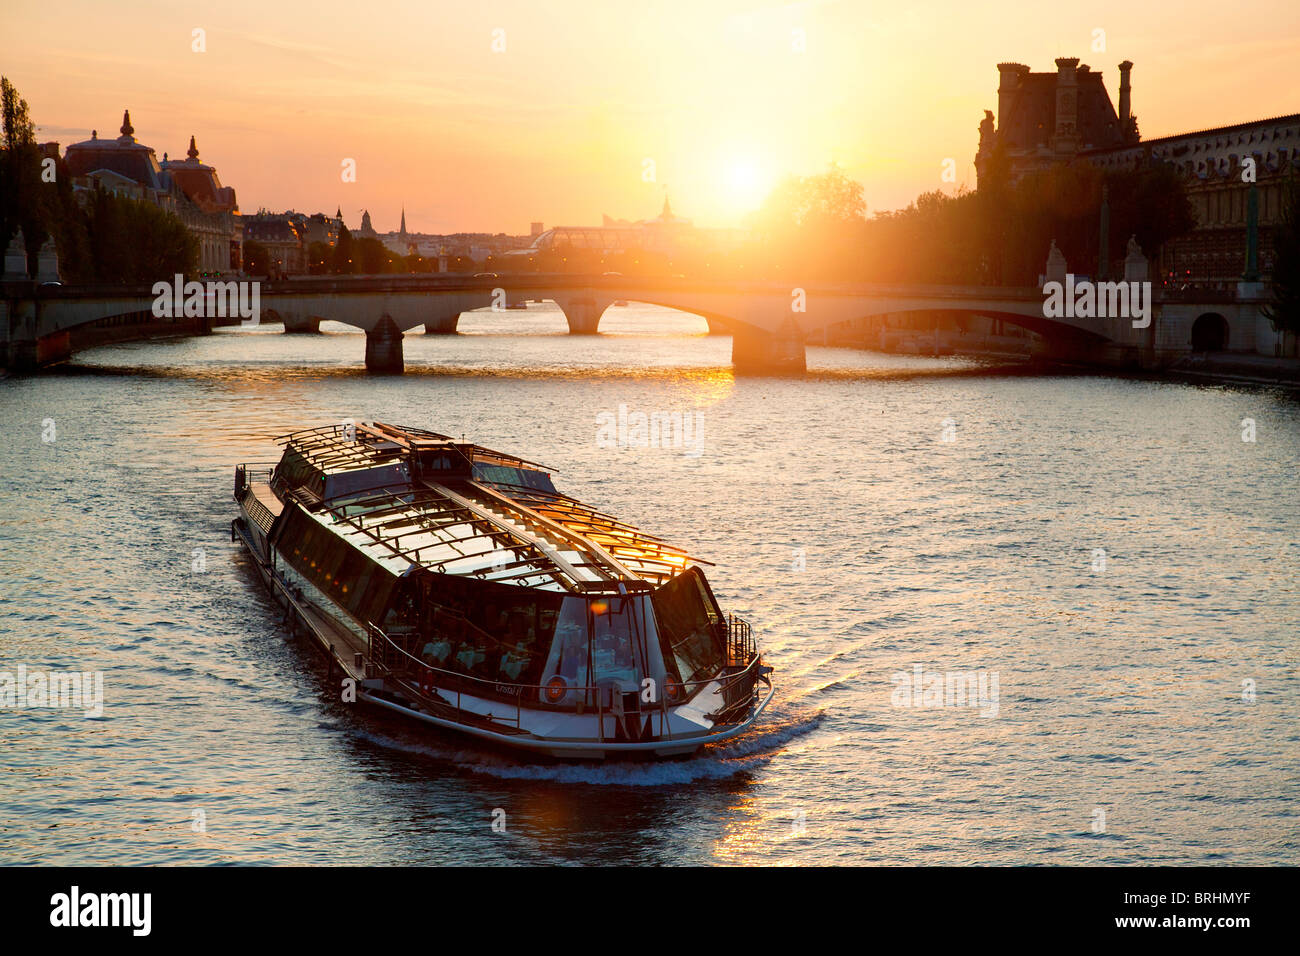 Europe, France, Paris, Bateau de tourisme sur la Seine au coucher du soleil Banque D'Images